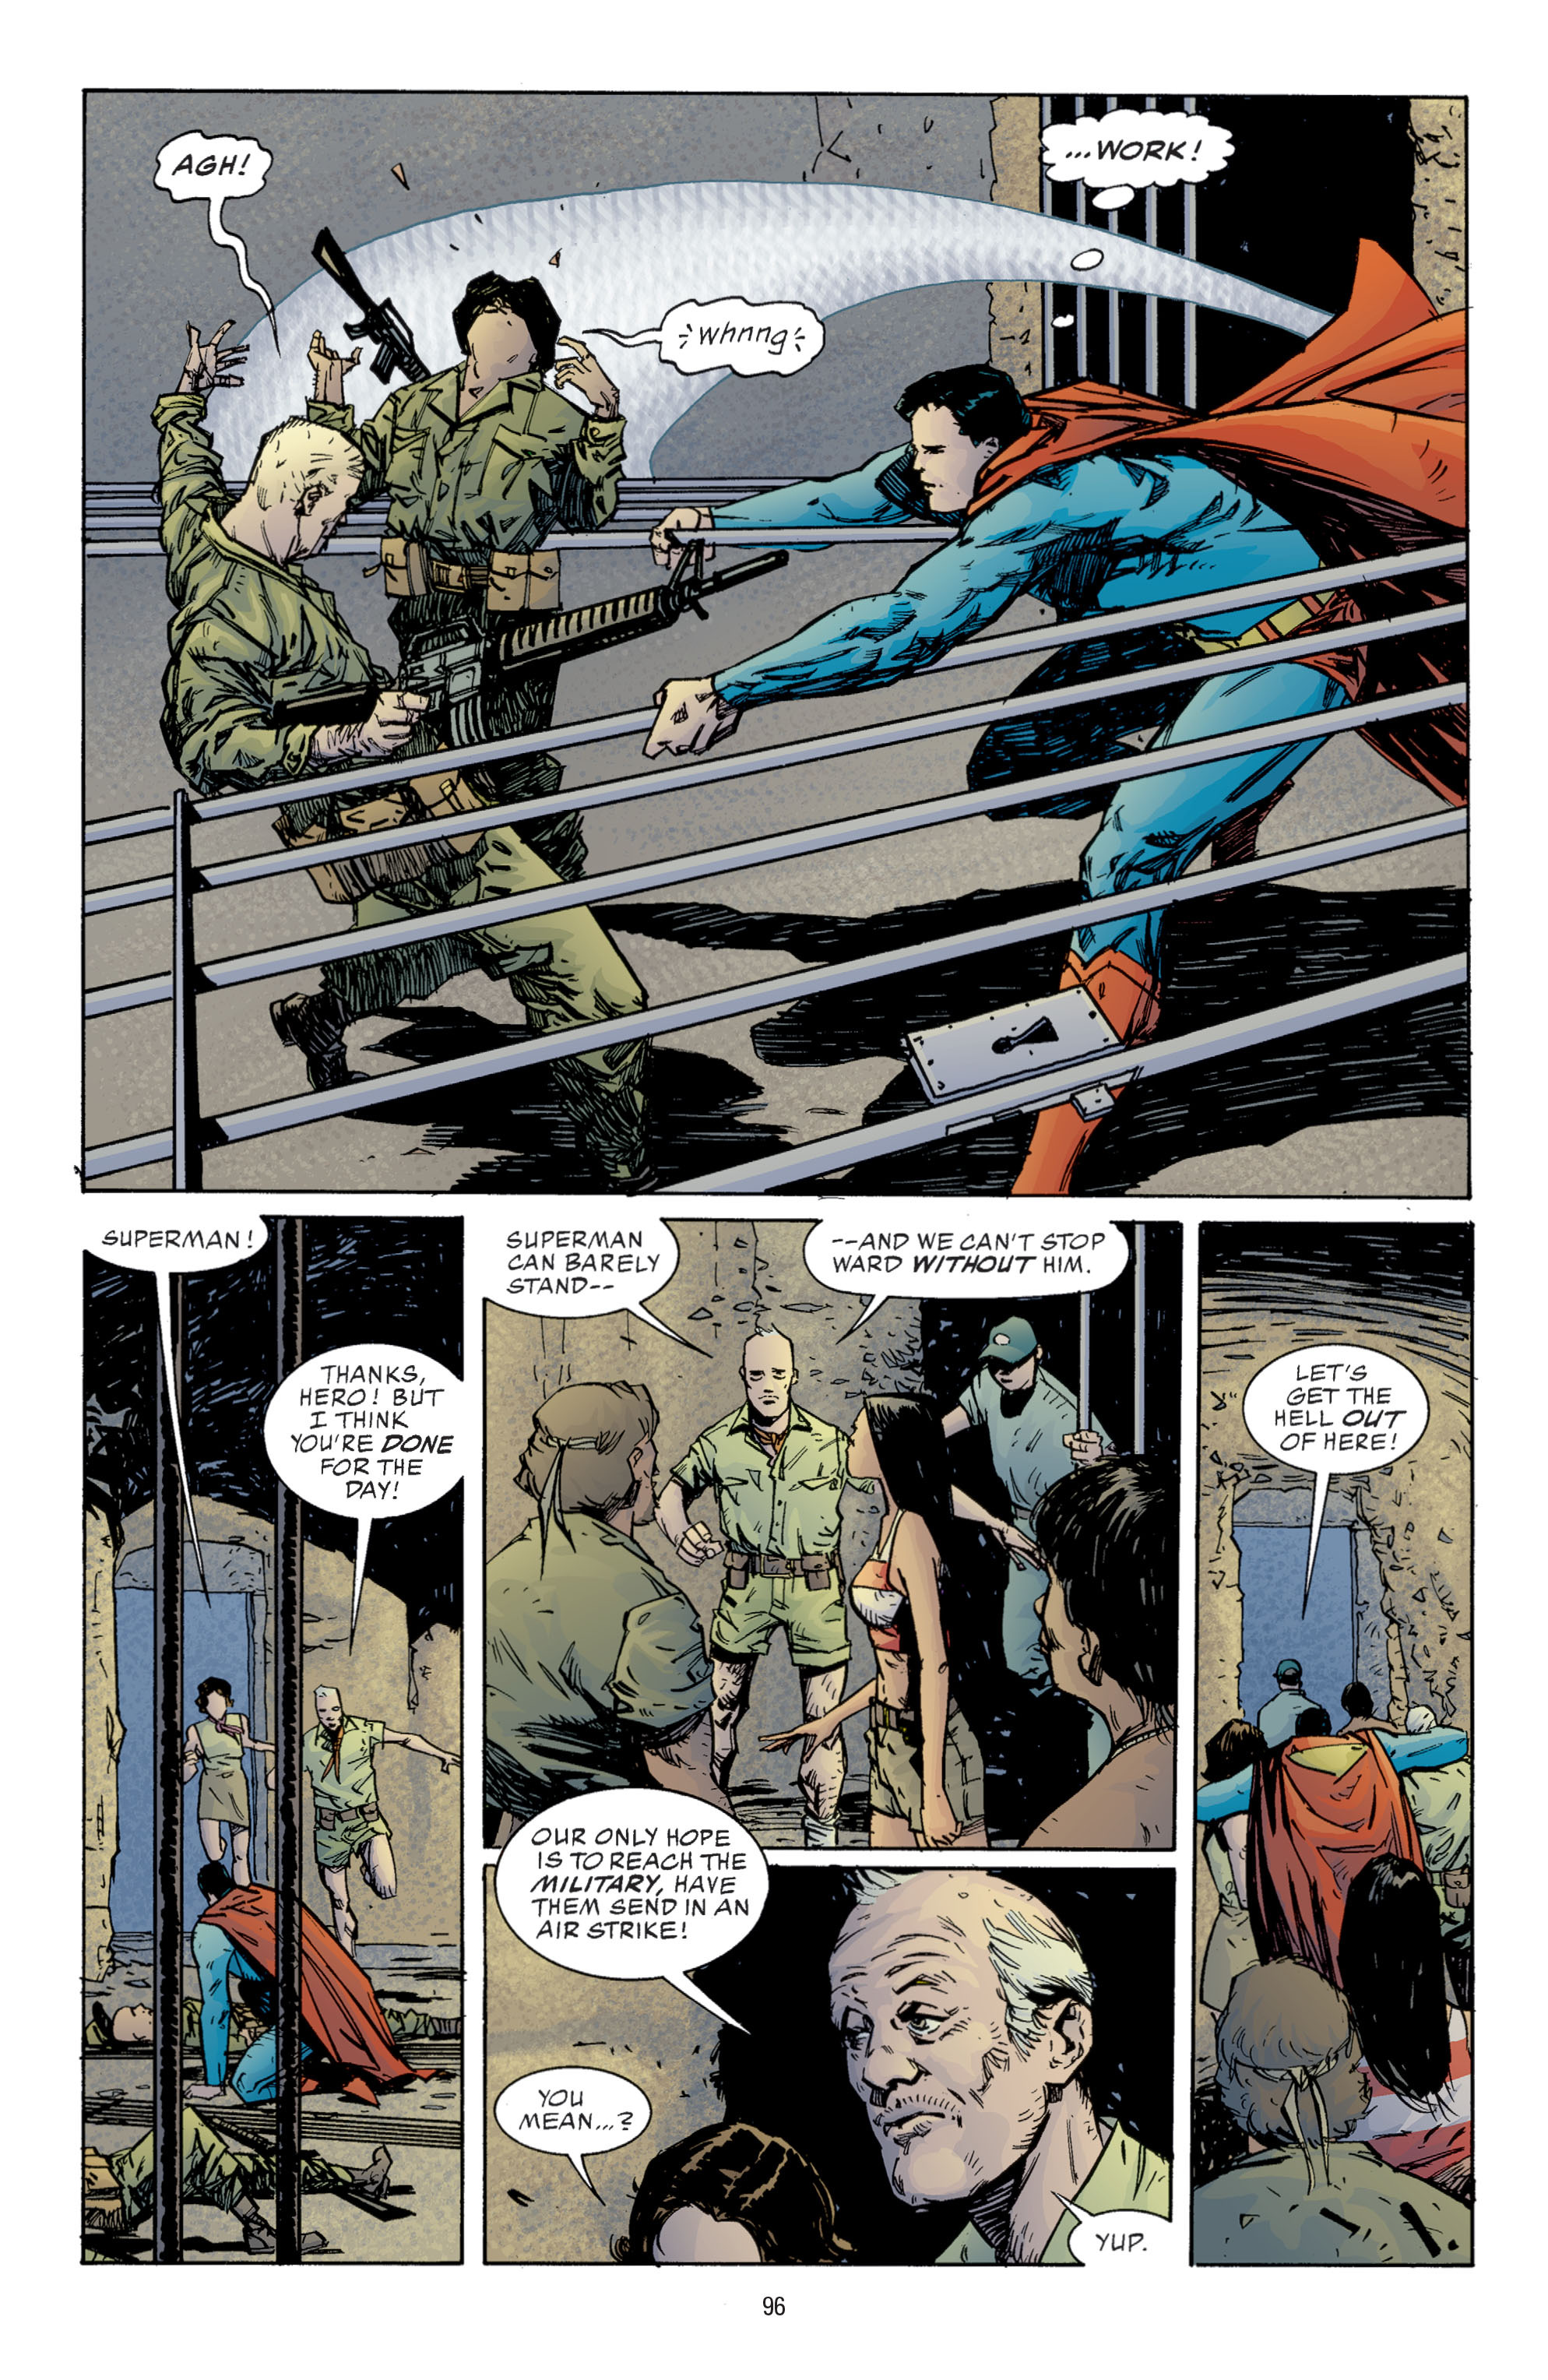 DC Comics/Dark Horse Comics: Justice League Full #1 - English 94